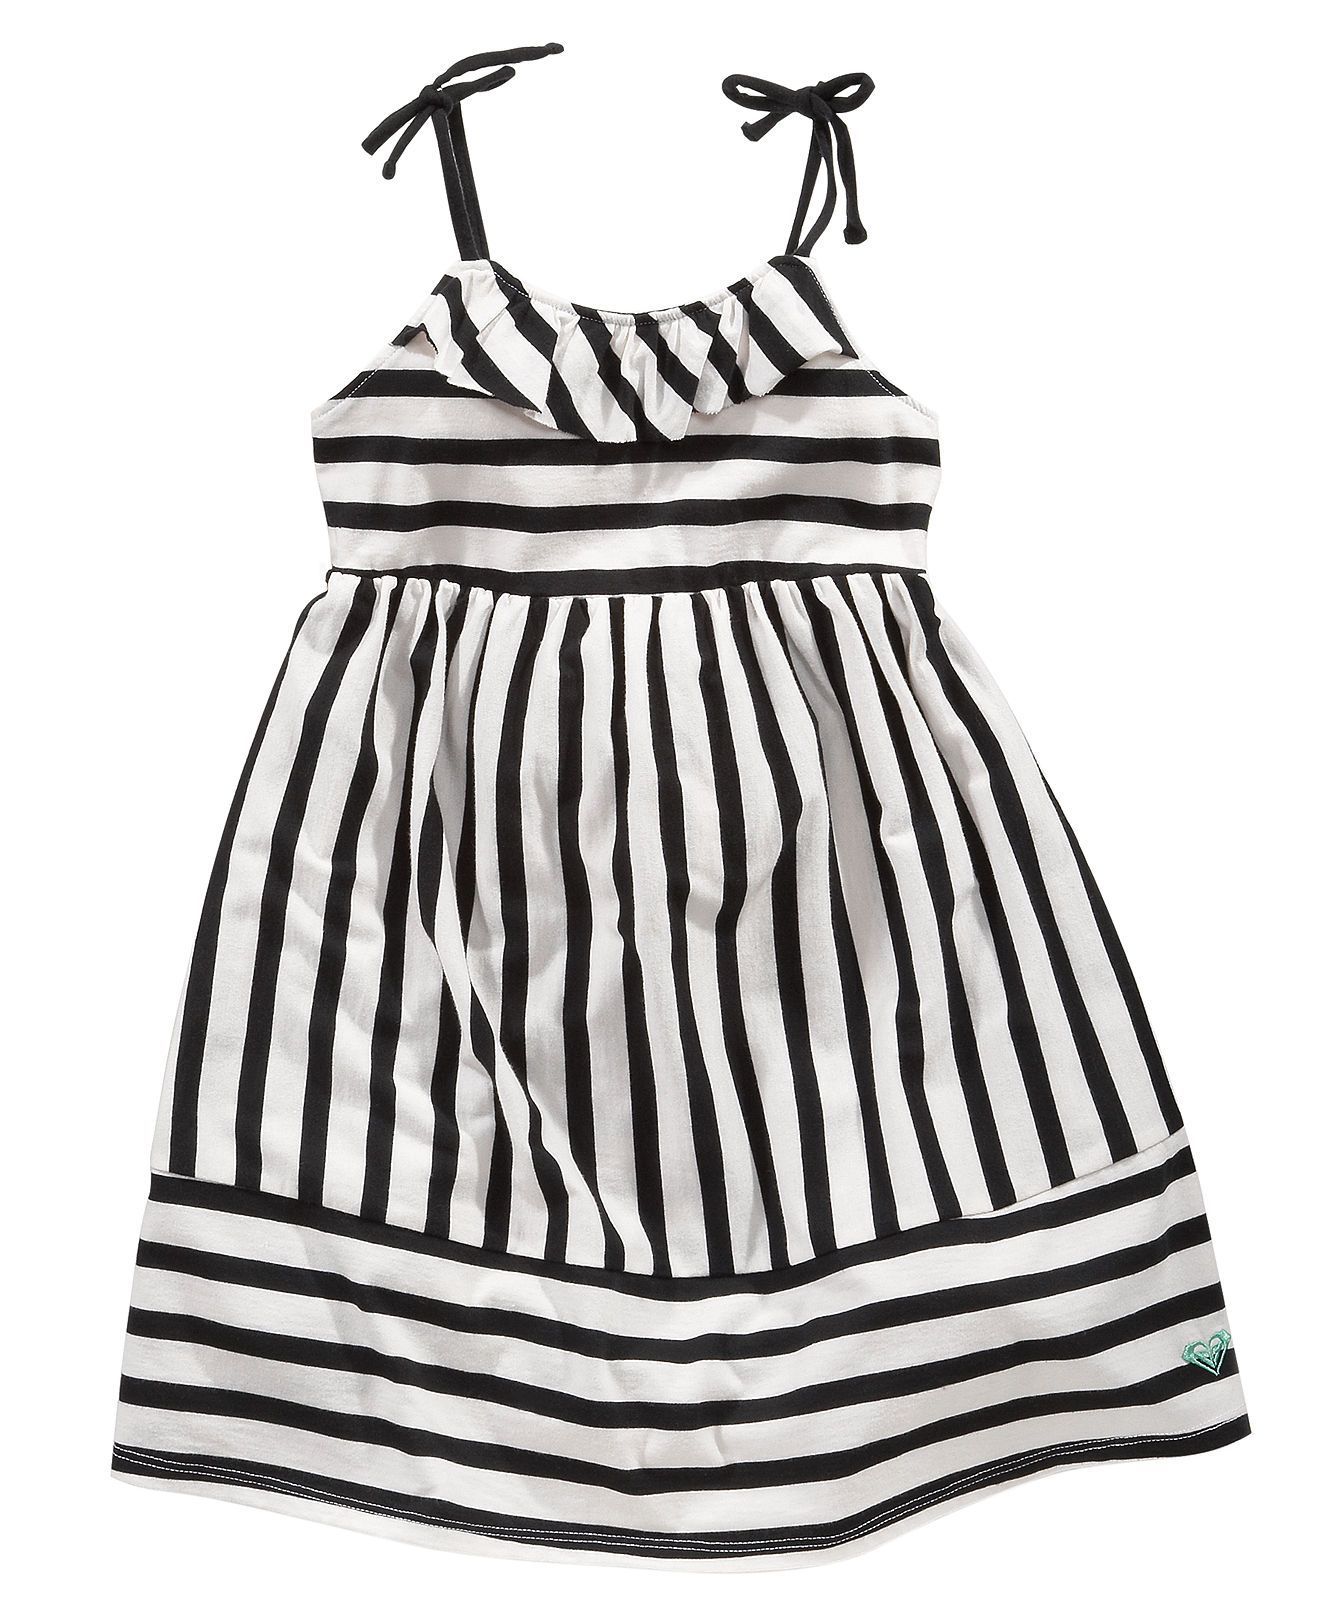 Roxy Kids Dress, Little Girls Striped Dress